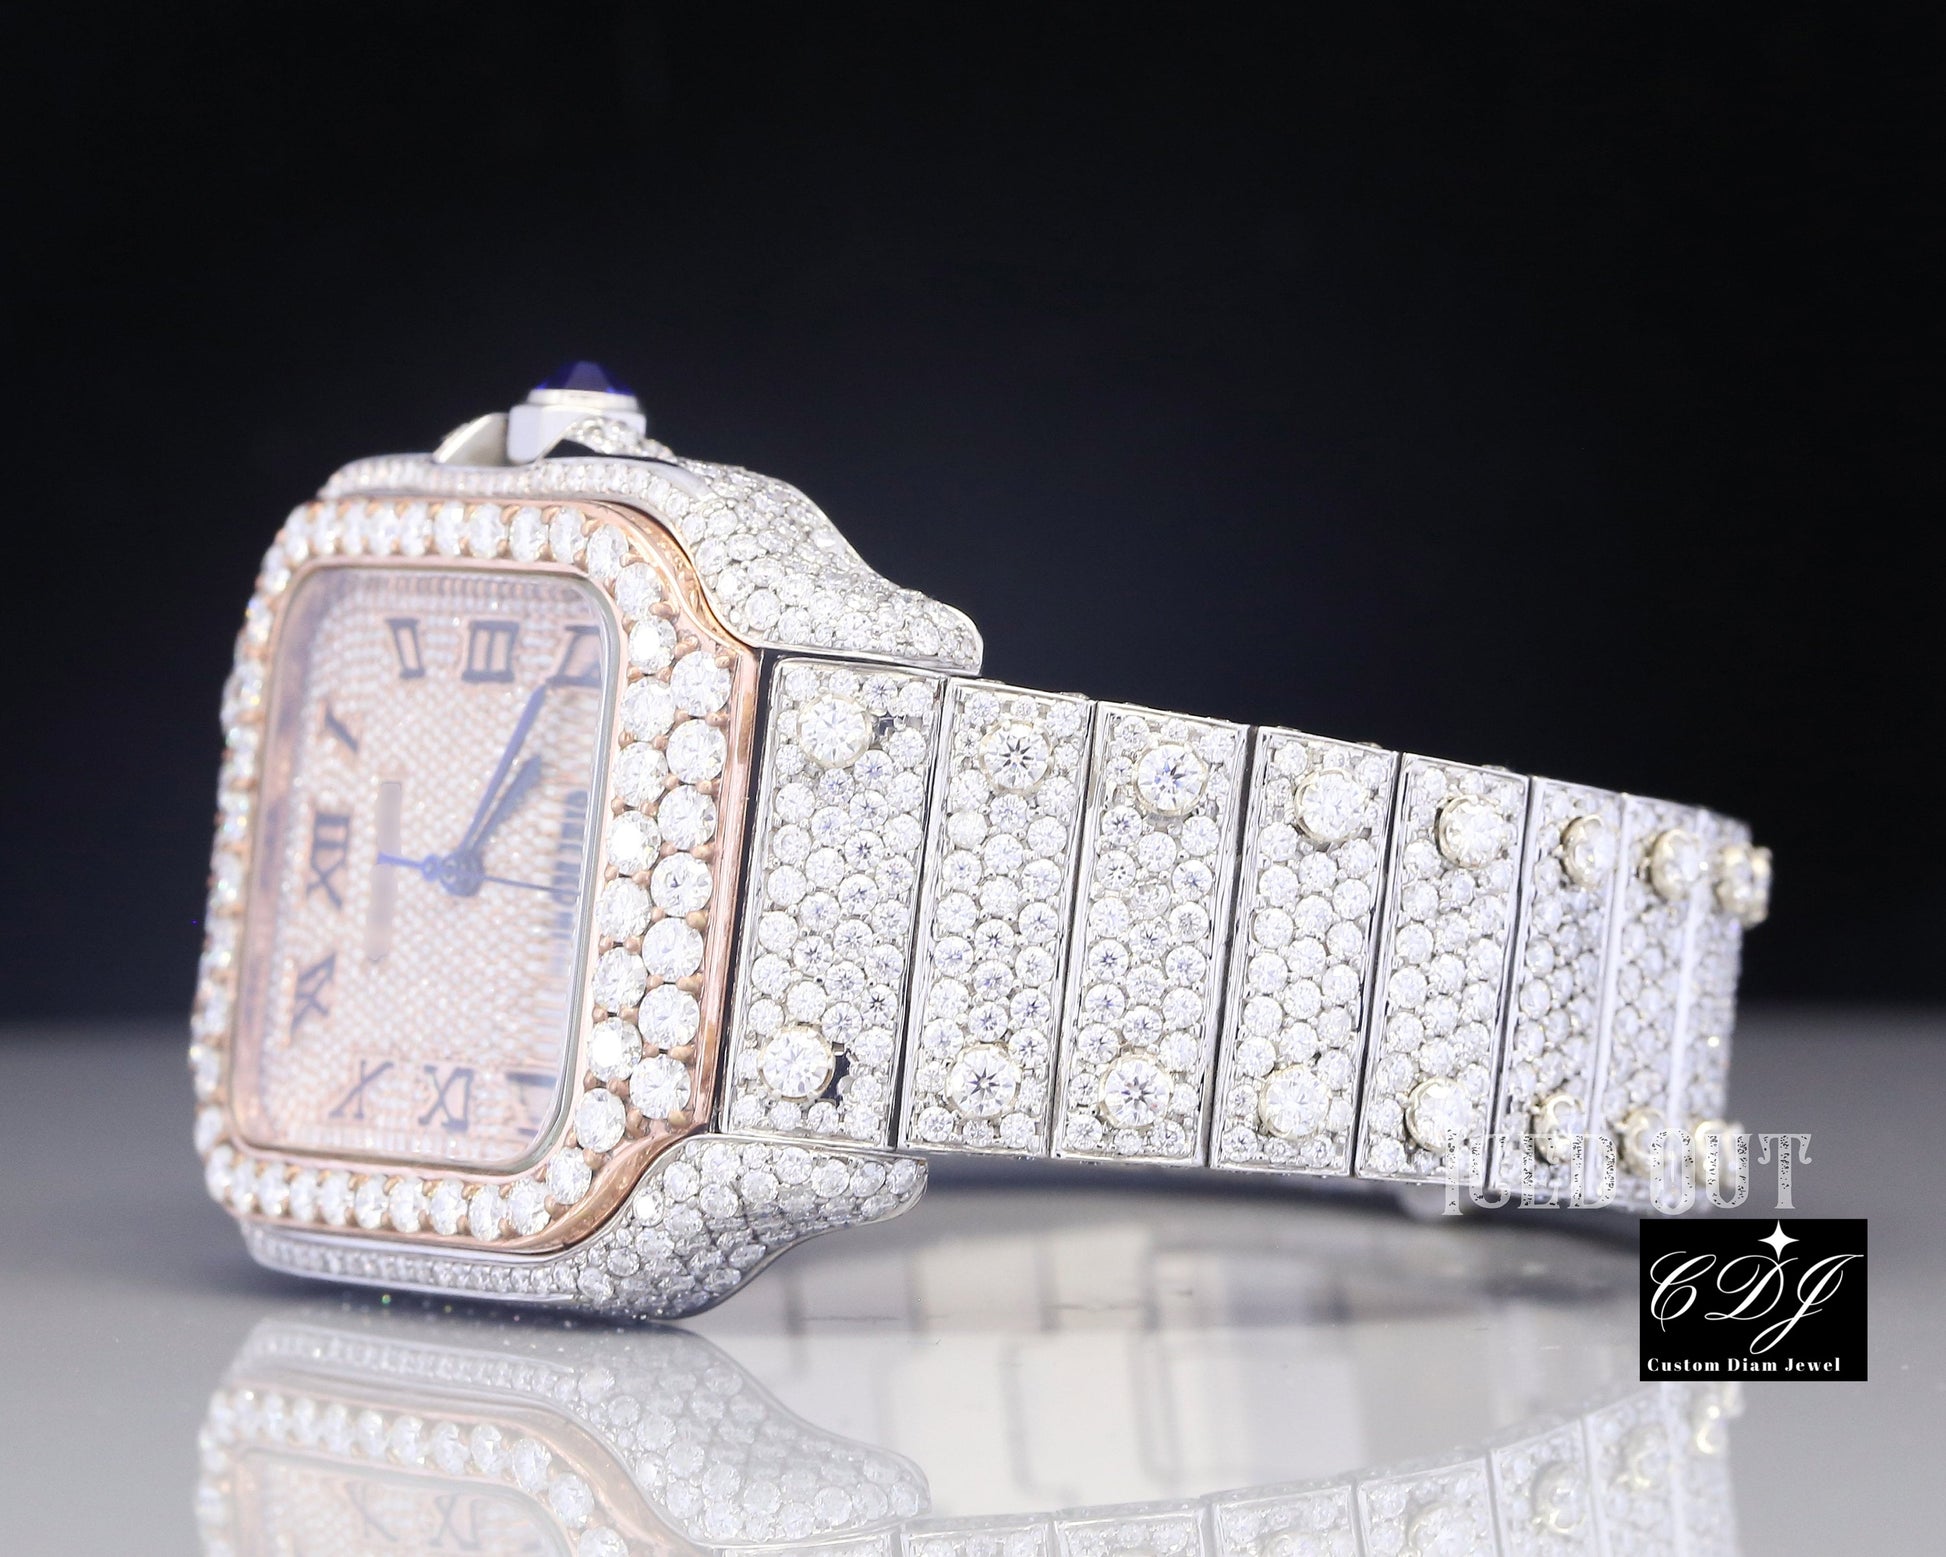 Two Tone Round Diamond Cartier Wrist Watch (25CT Approx)  customdiamjewel   